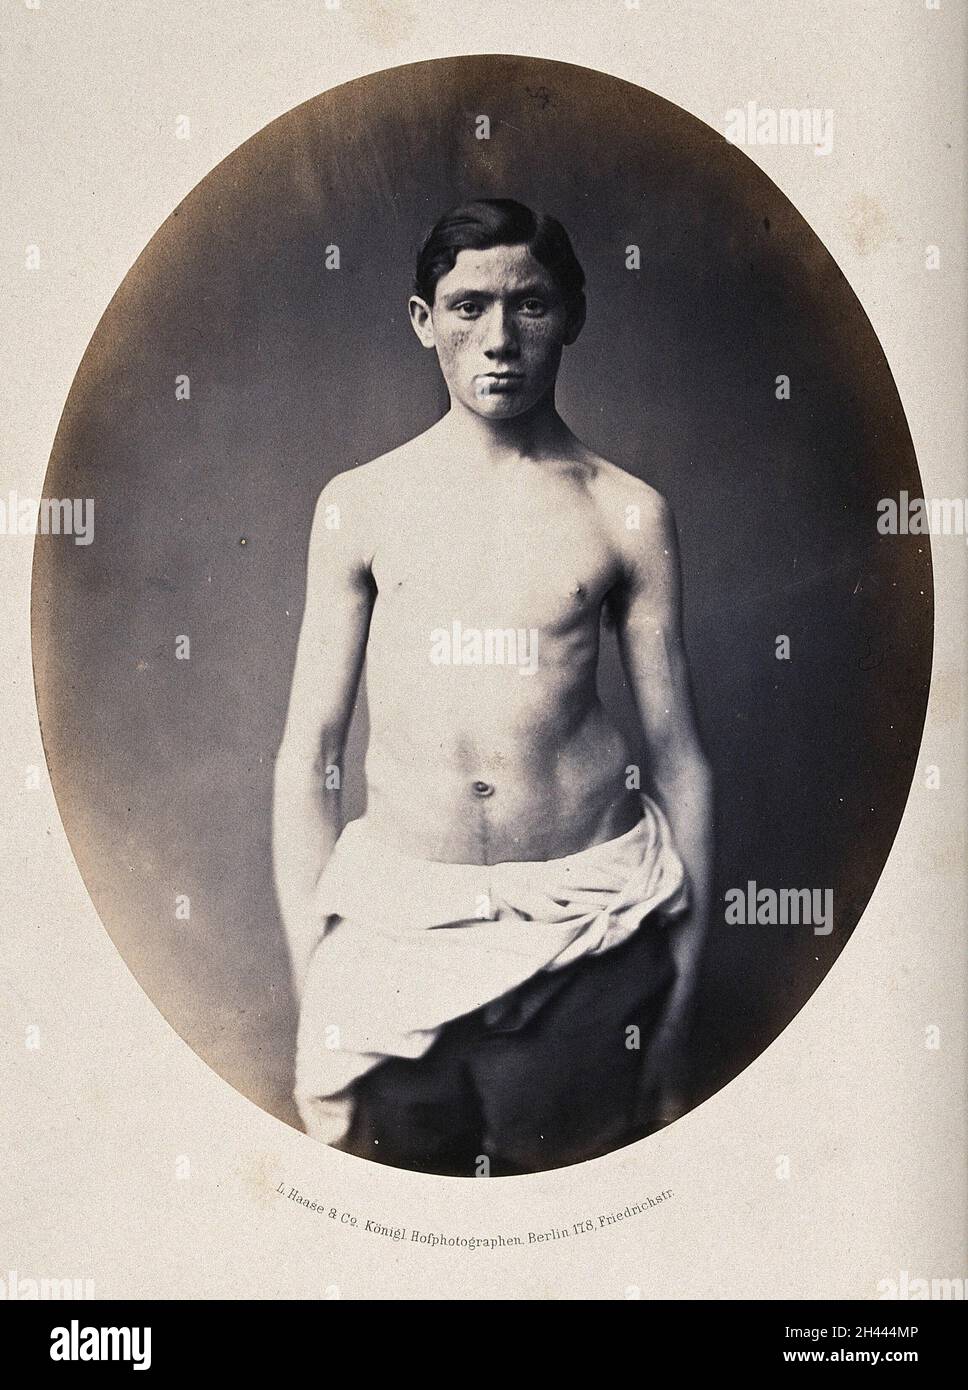 Un jeune homme debout, vue en longueur de 3/4, partiellement vêtu; montrant une déformation de la hanche gauche.Photographie de L. Haase après H.W.Berend, c.1865. Banque D'Images